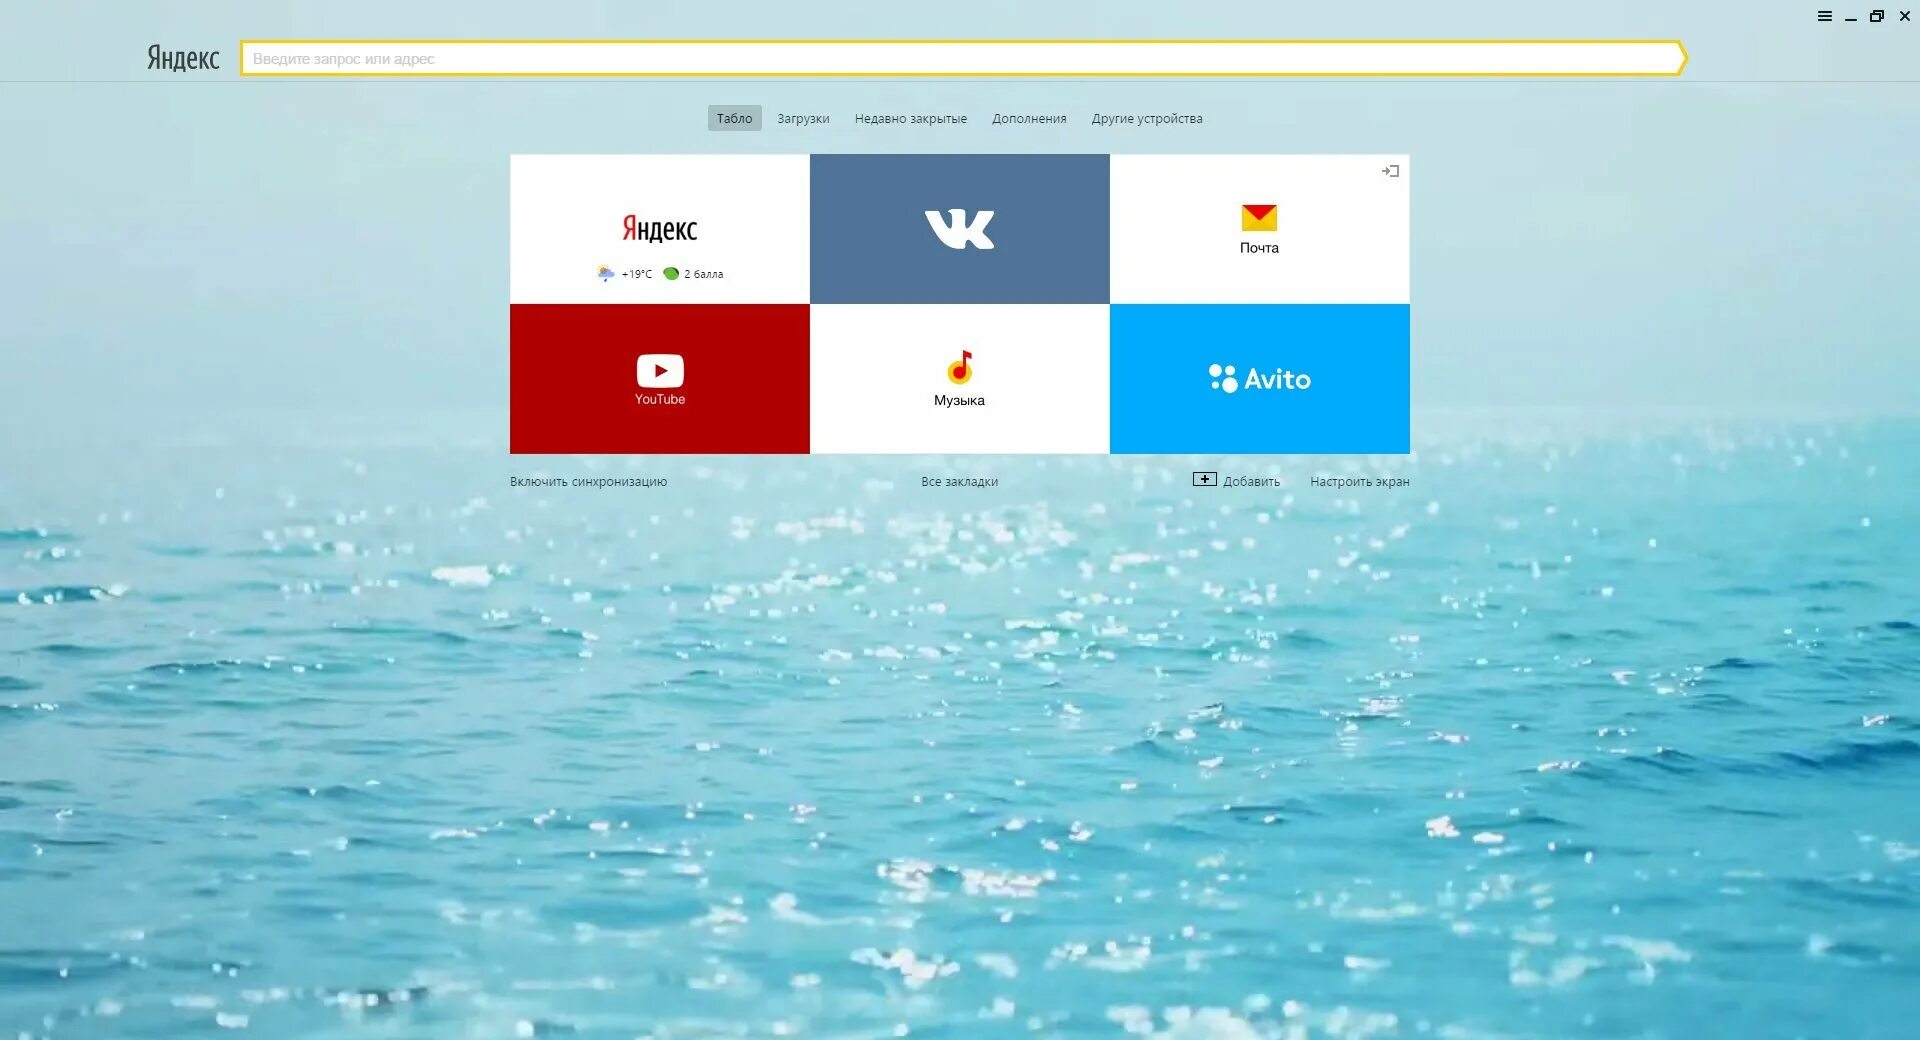 Фон для Яндекса. На главном экране появилась реклама